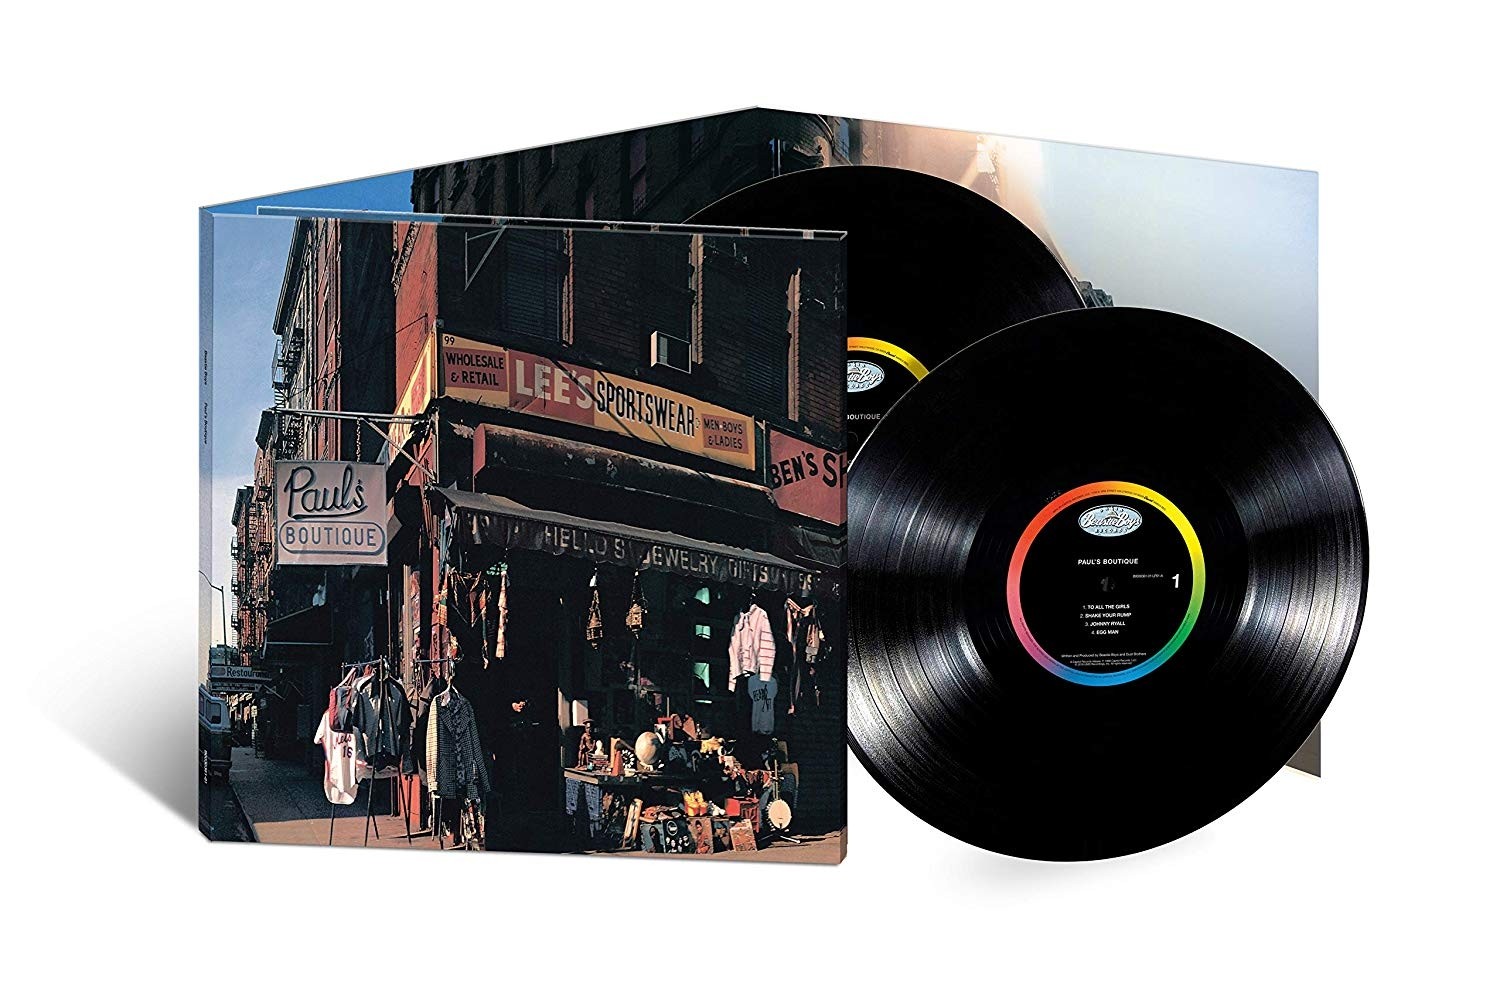 Beastie Boys - Paul's Boutique 2XLP vinyl